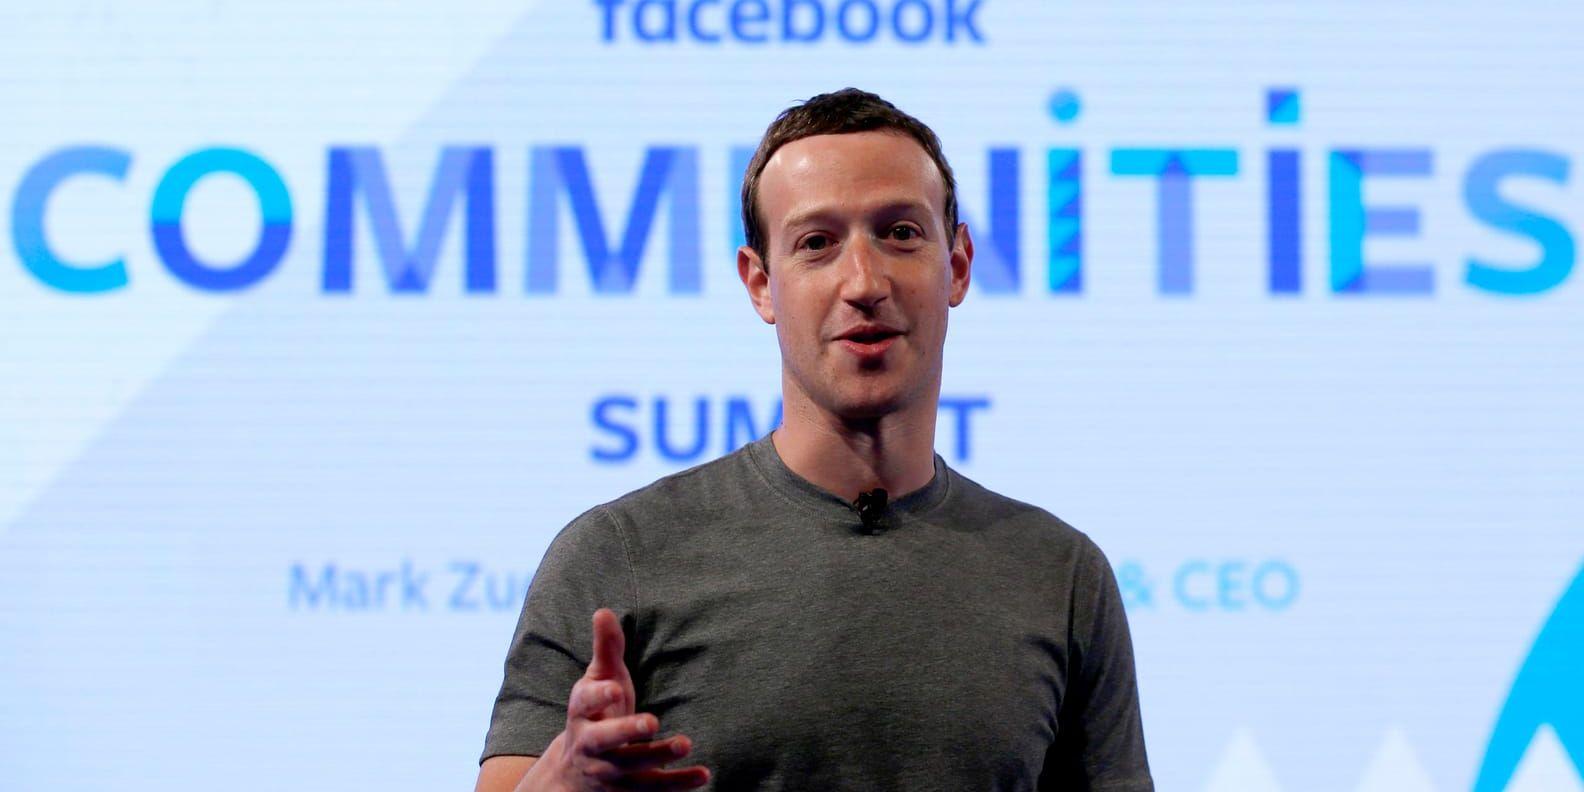 Flera nätjättar har kallats till en utfrågning i ryssutredningen, bland annat Facebook där Mark Zuckerberg är vd. Arkivbild.